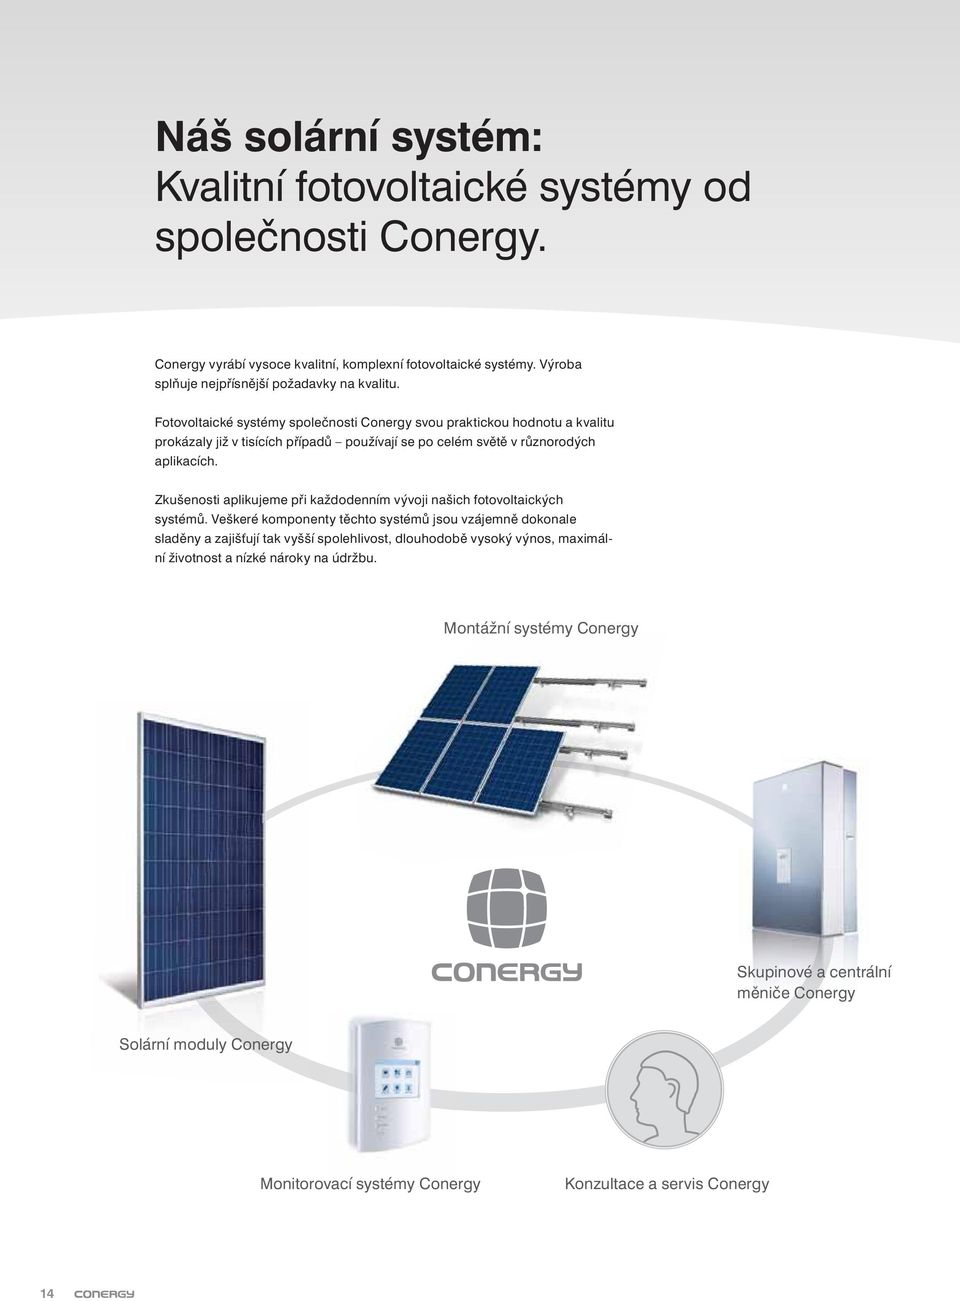 Fotovoltaické systémy společnosti Conergy svou praktickou hodnotu a kvalitu prokázaly již v tisících případů používají se po celém světě v různorodých aplikacích.